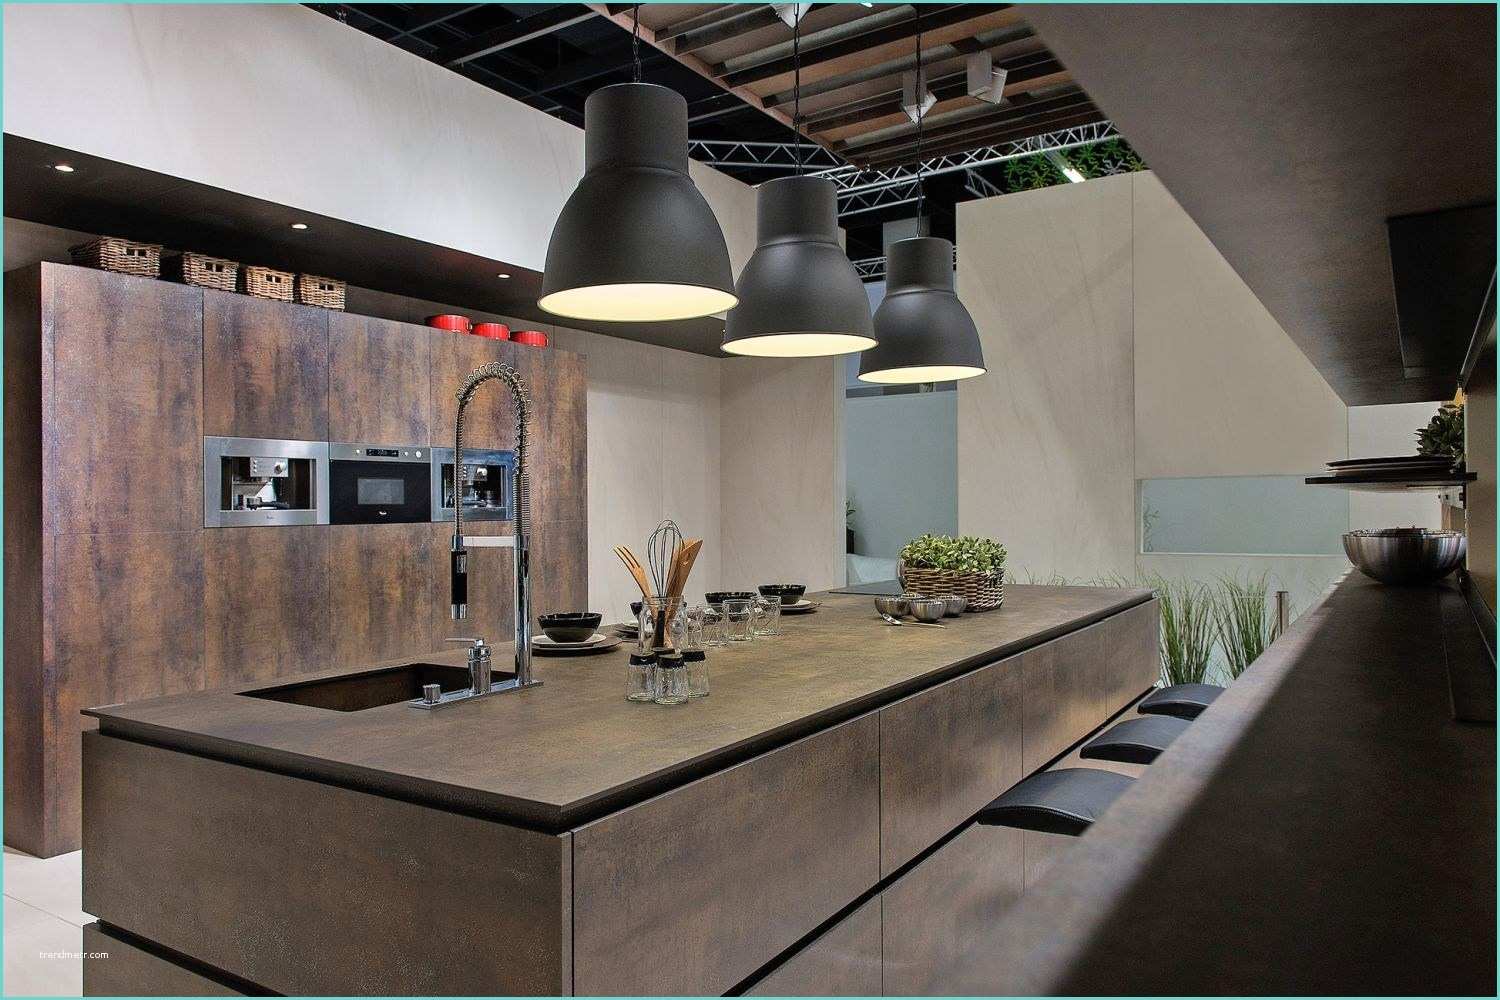 Objet Deco Loft Industriel Objet De Decoration Design 11 – Cuisine Style Design